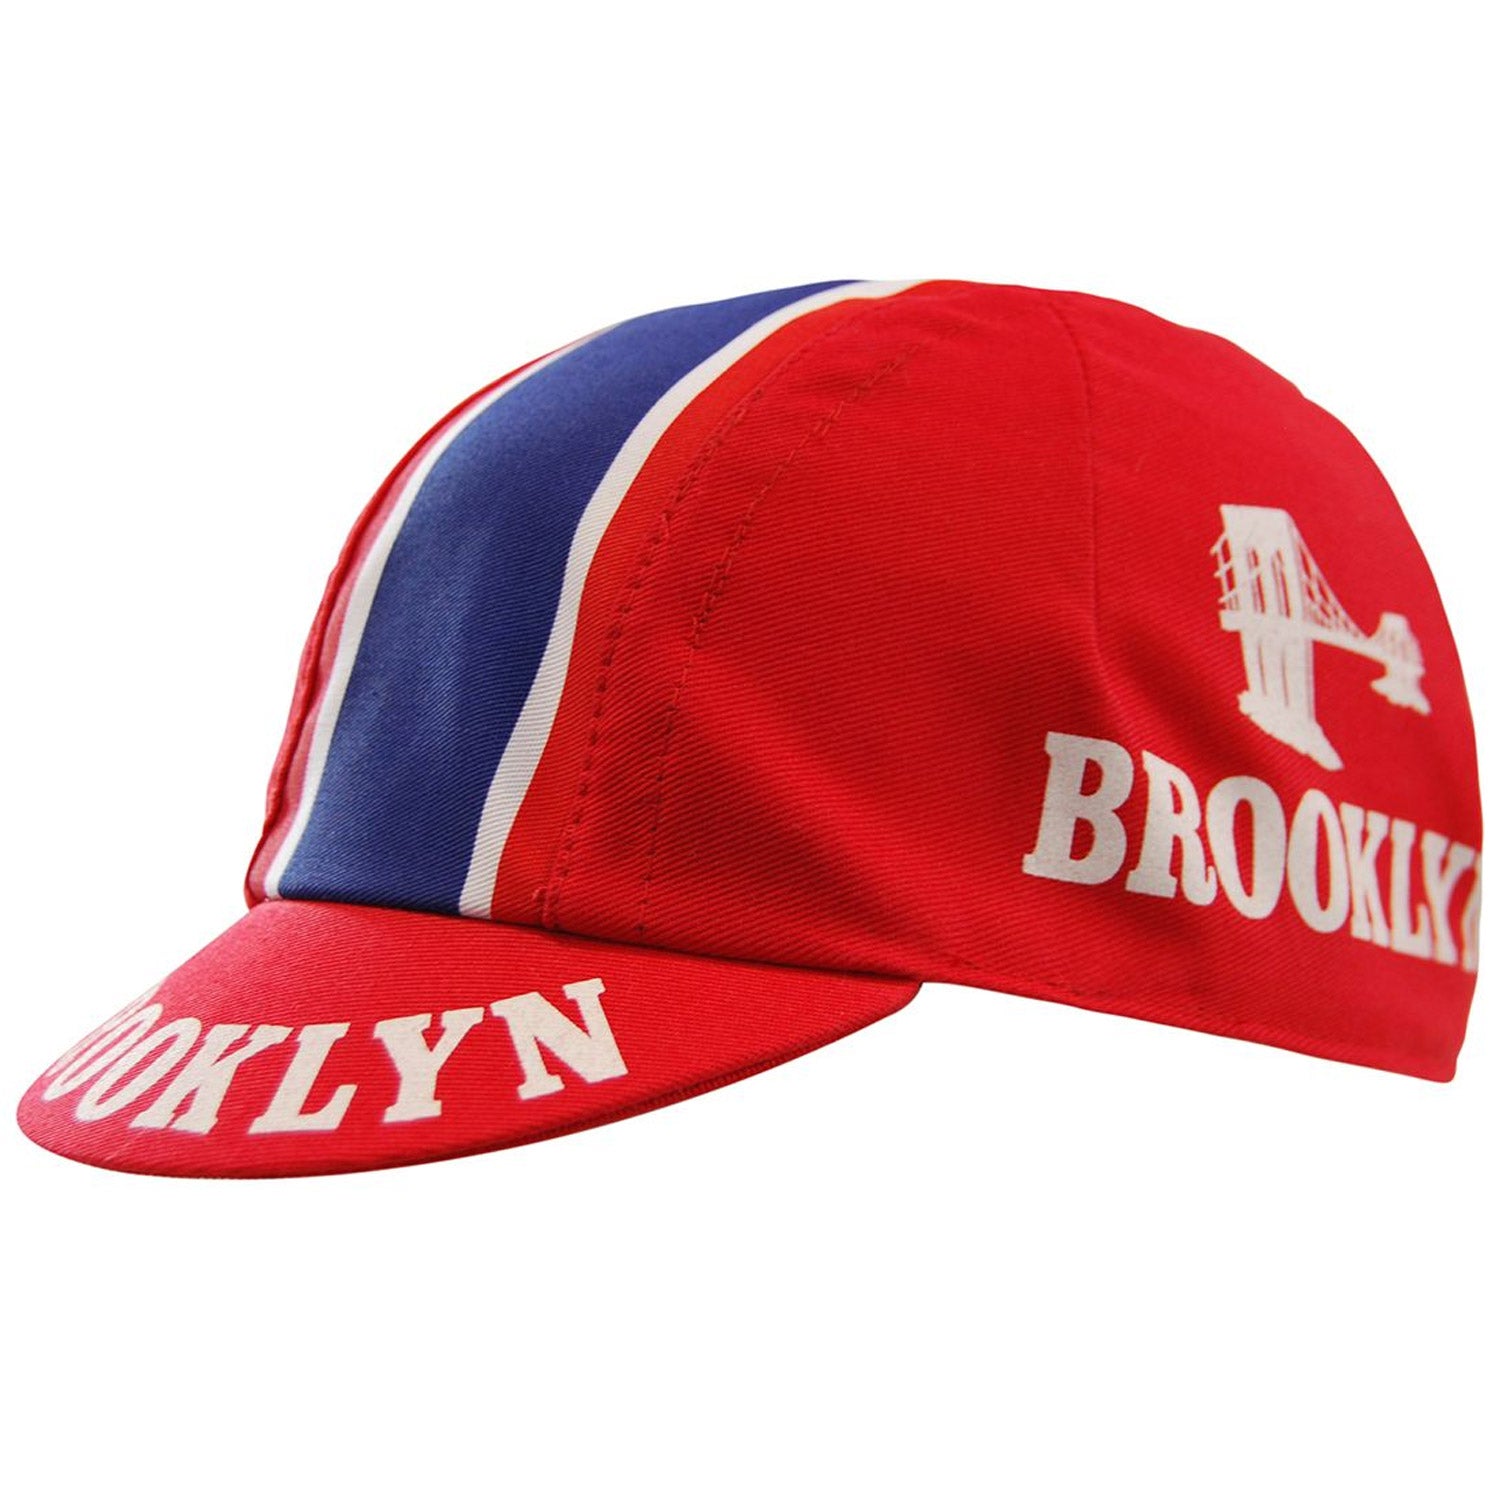 Casquette Headdy Brooklyn - Rojo